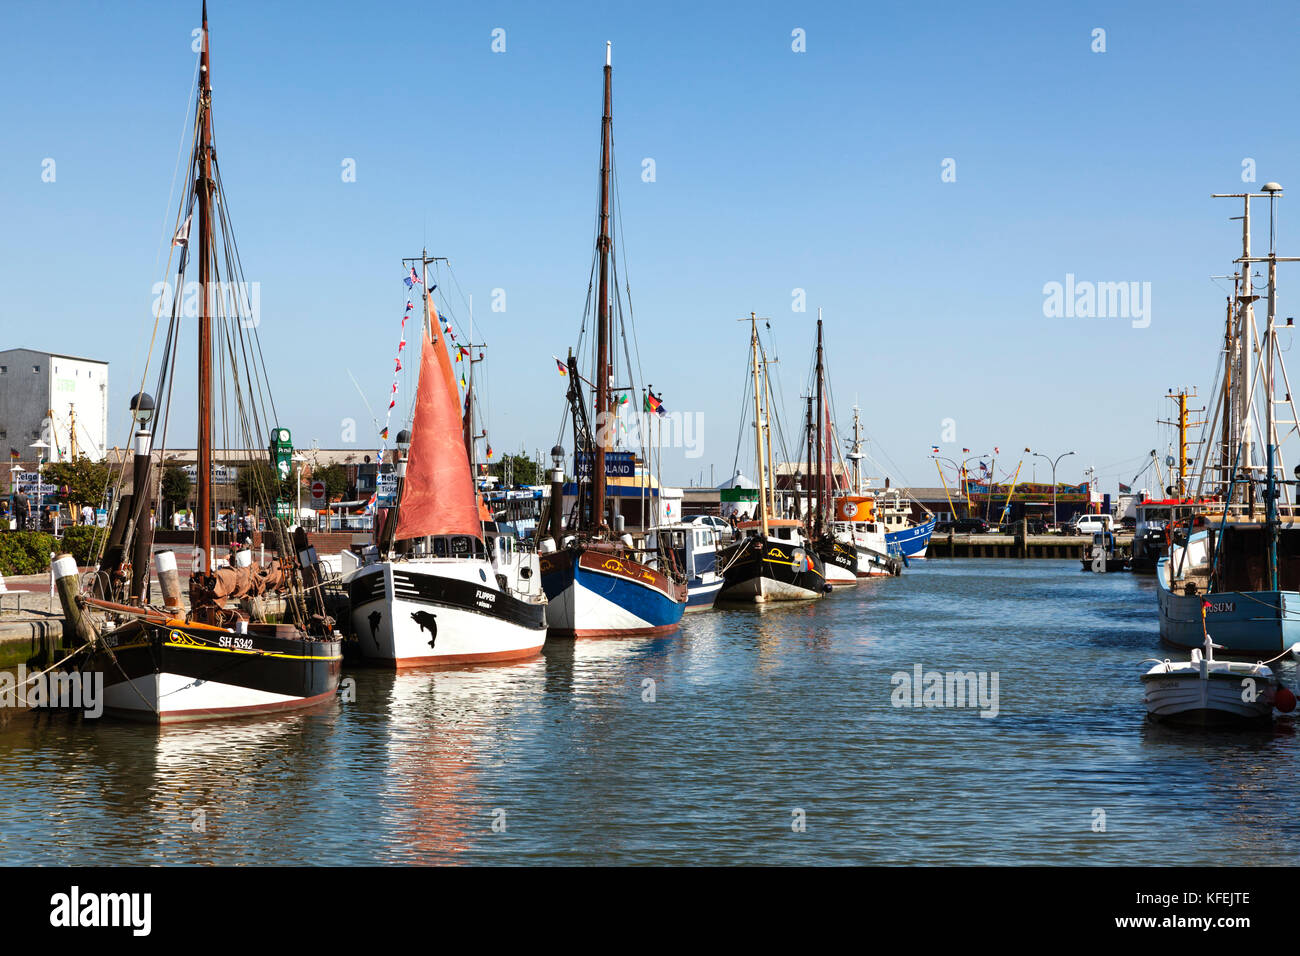 Bateaux de pêche au port de Büsum, Schleswig-Holstein, Allemagne Banque D'Images